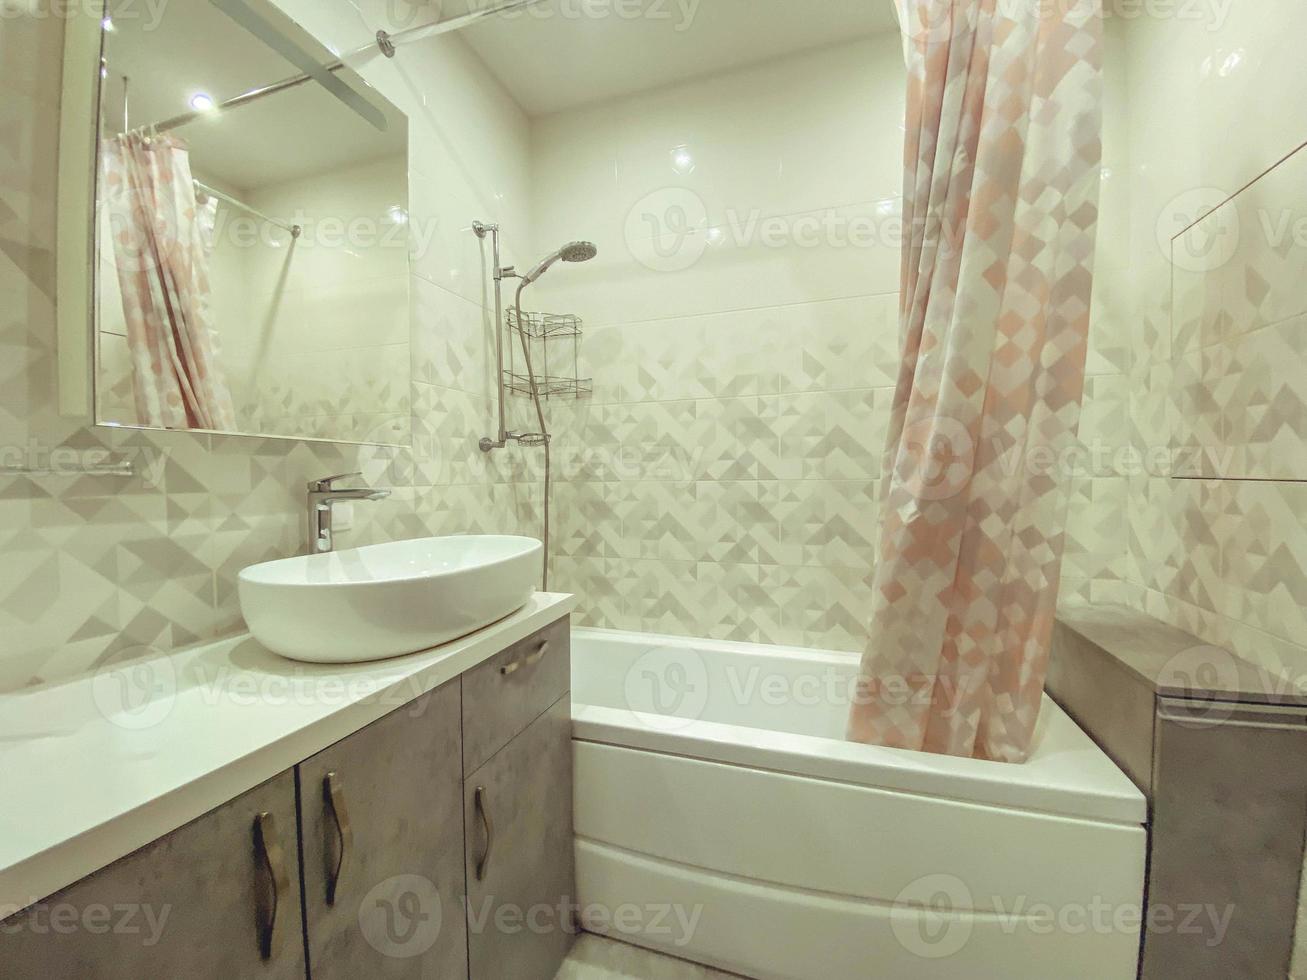 banho moderno e elegante em um apartamento residencial. uma enorme pia feita de material branco, uma bancada de pedra. espelho com prateleiras chuveiro atrás de uma cortina foto